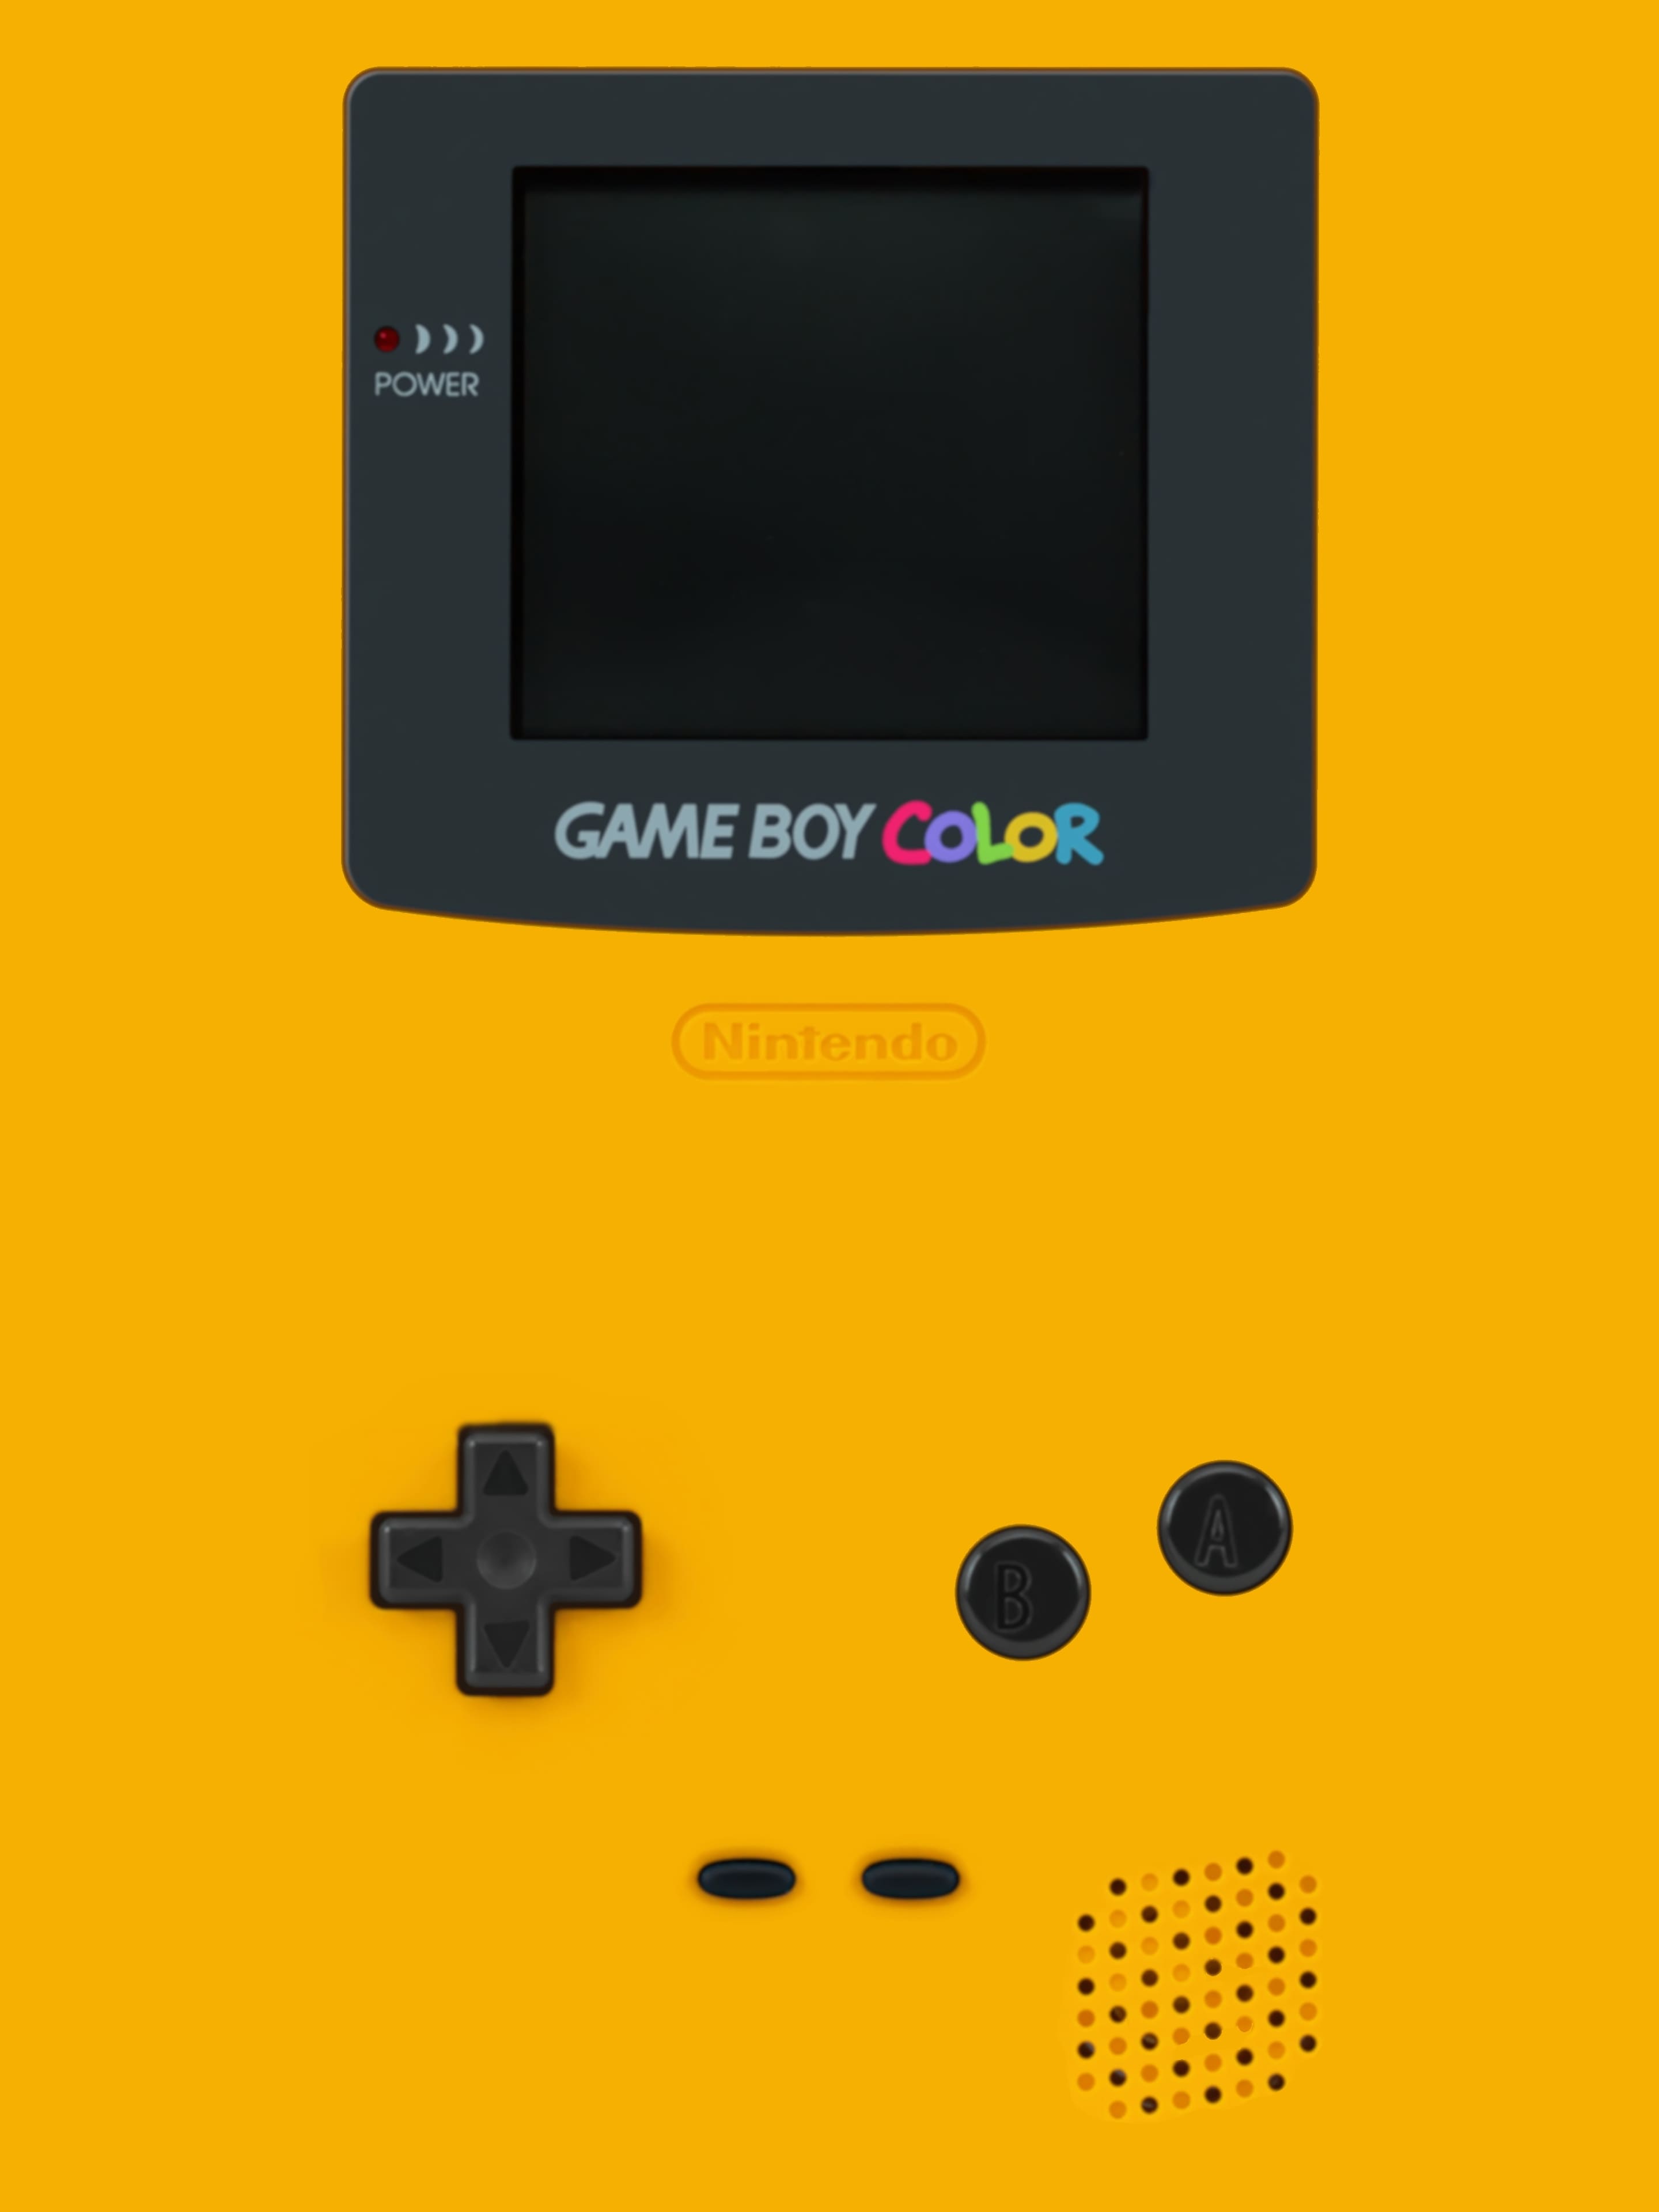 Hình nền Game Boy là một lựa chọn hoàn hảo cho những ai yêu thích thể loại game cổ điển! Bạn sẽ cảm thấy như đang trở về tuổi thơ khi đem hình nền Game Boy lên thay đổi giao diện cho điện thoại của mình. Hãy xem hình ảnh liên quan và trải nghiệm cảm giác này ngay thôi!